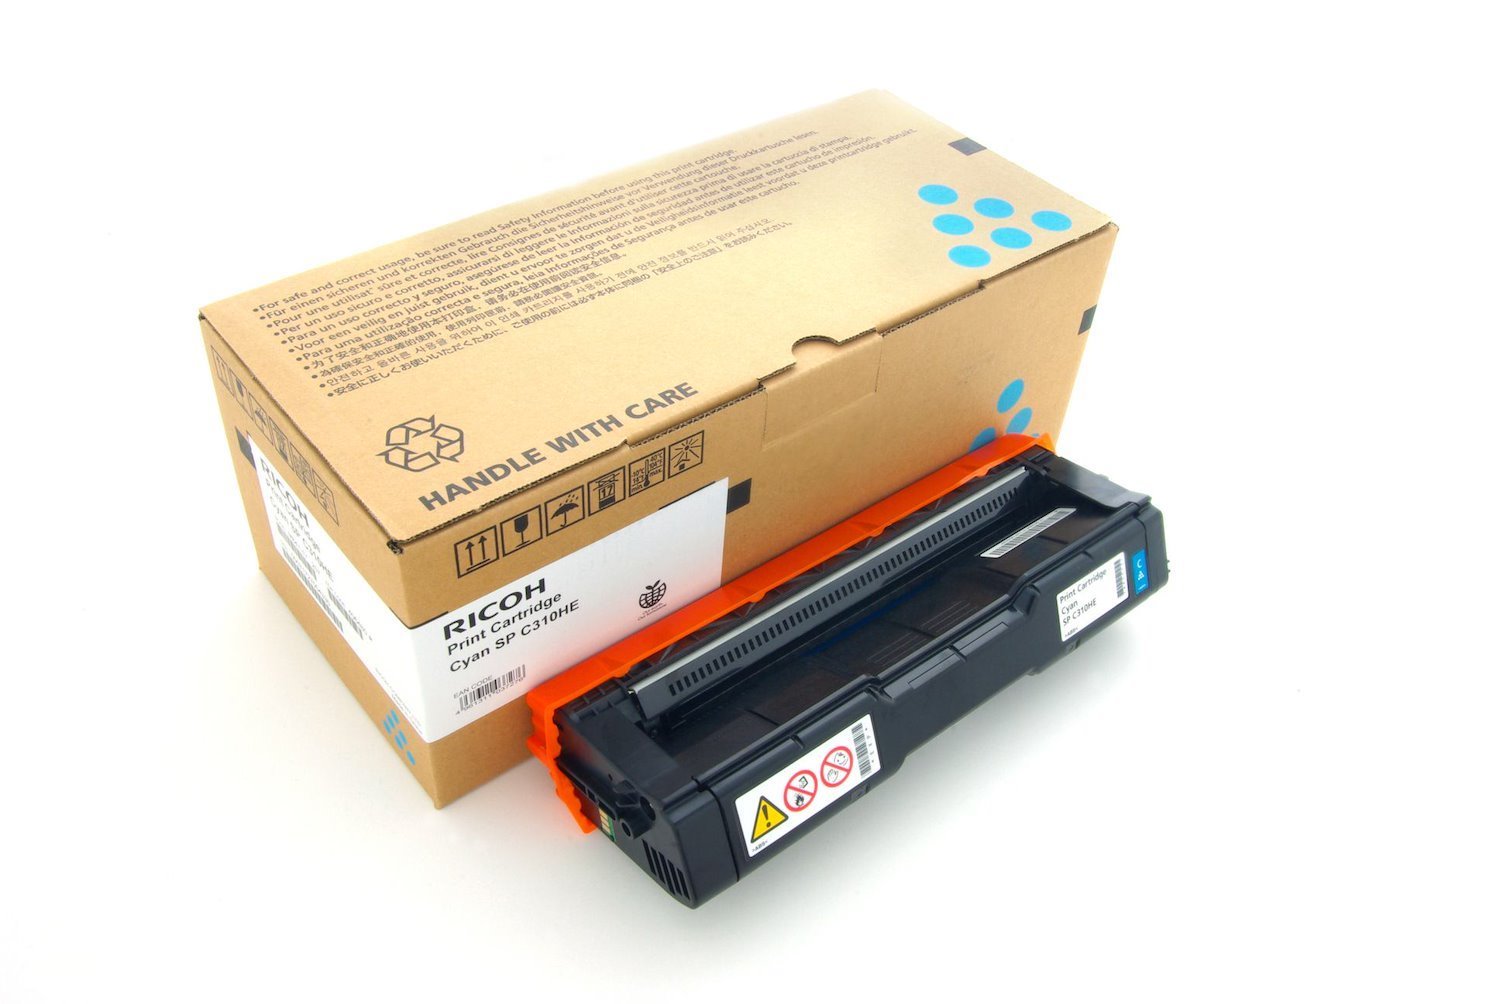 Ricoh 406480 Original Laser Toner Cartridge - Cyan Pack